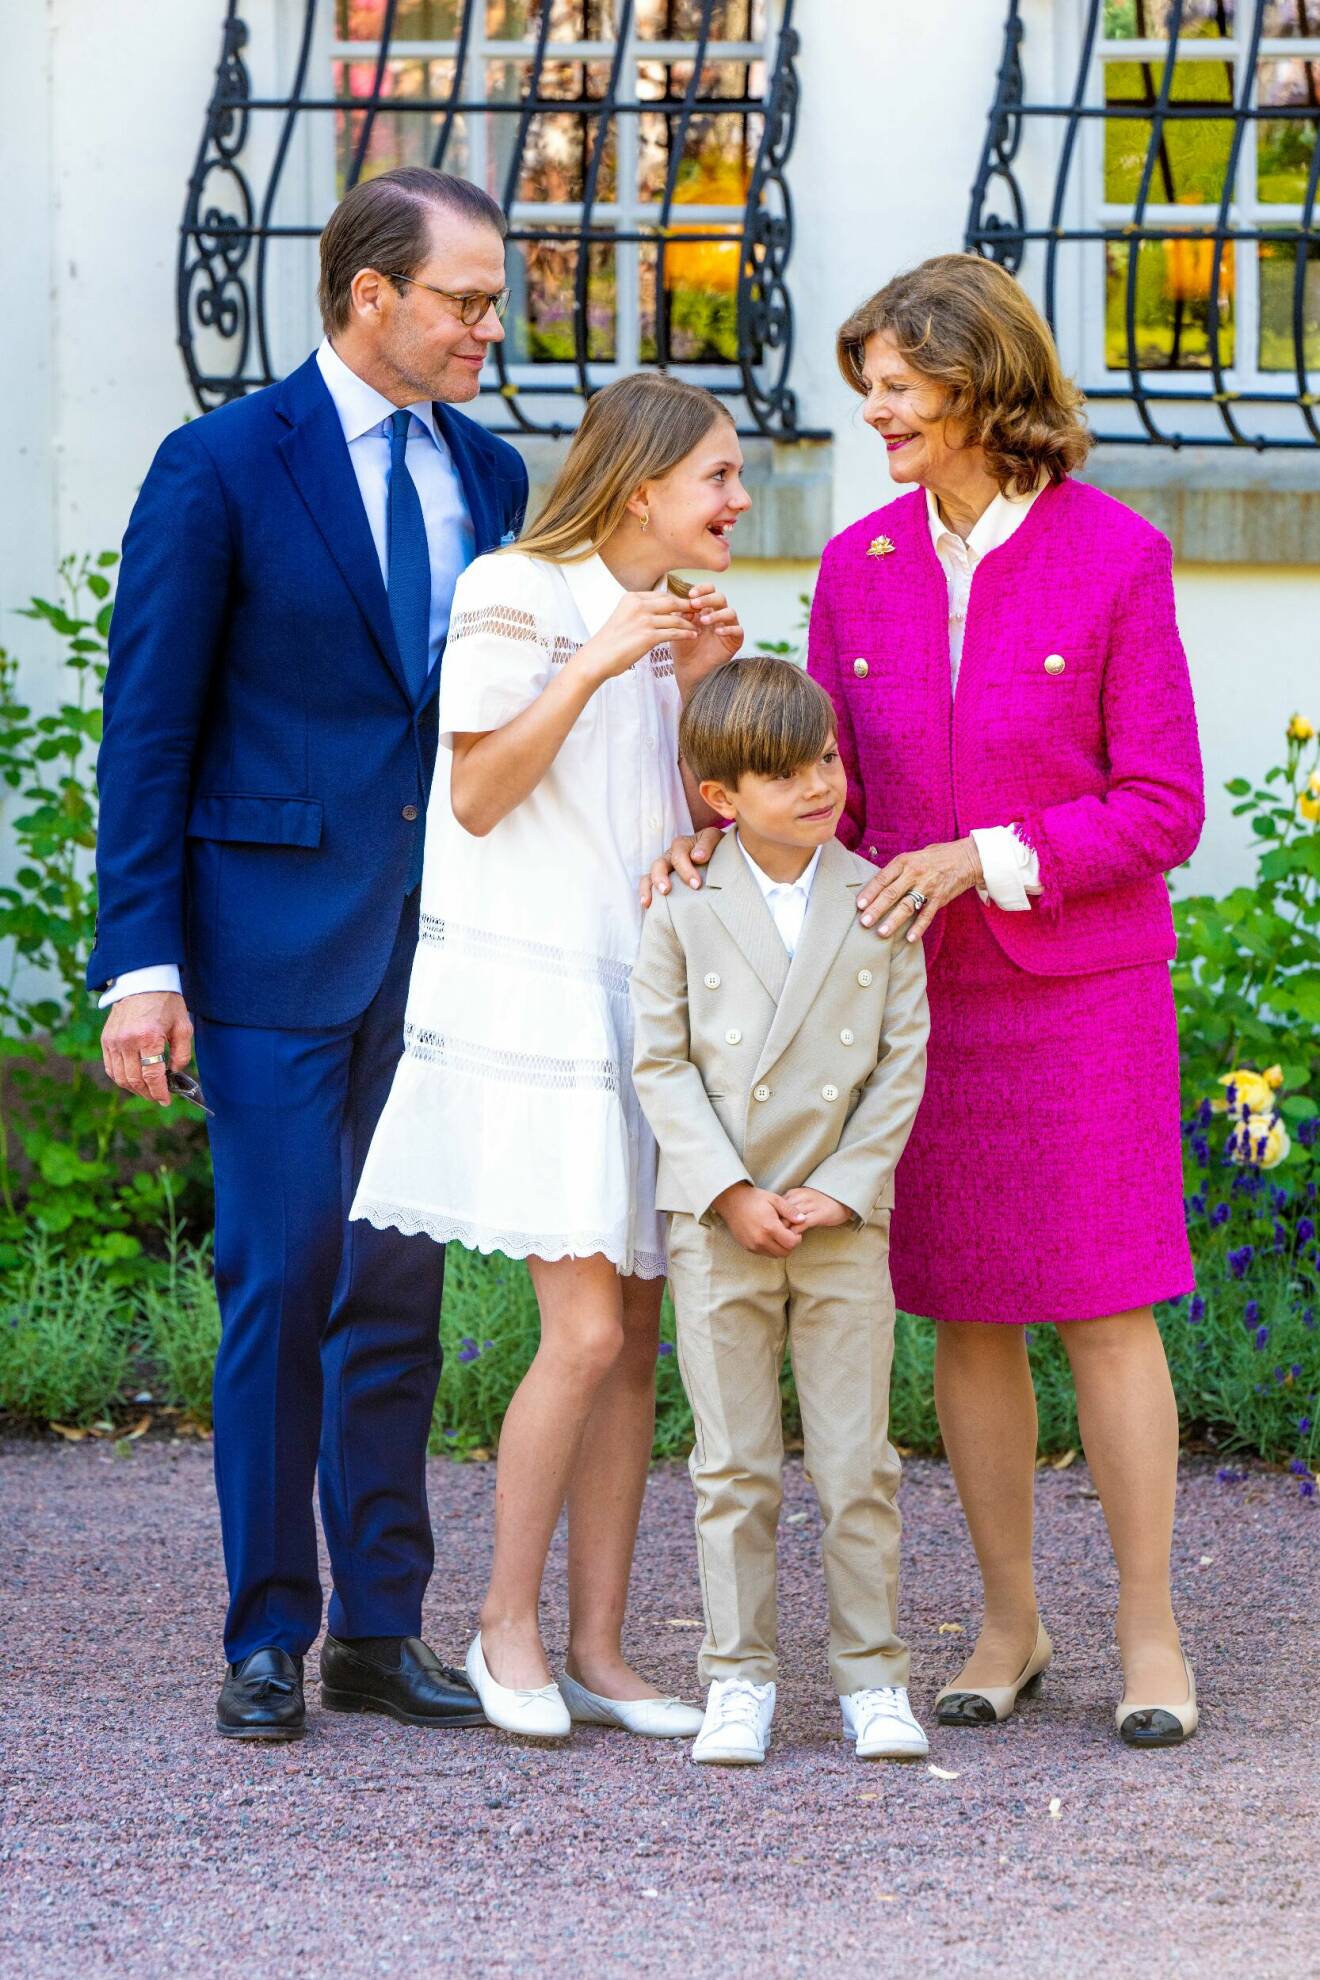 Prins Daniel tittar på när drottning Silvia och prinsessan Estelle skojar med varandra. Drottning Silvia håller händerna på prins Oscars axlar